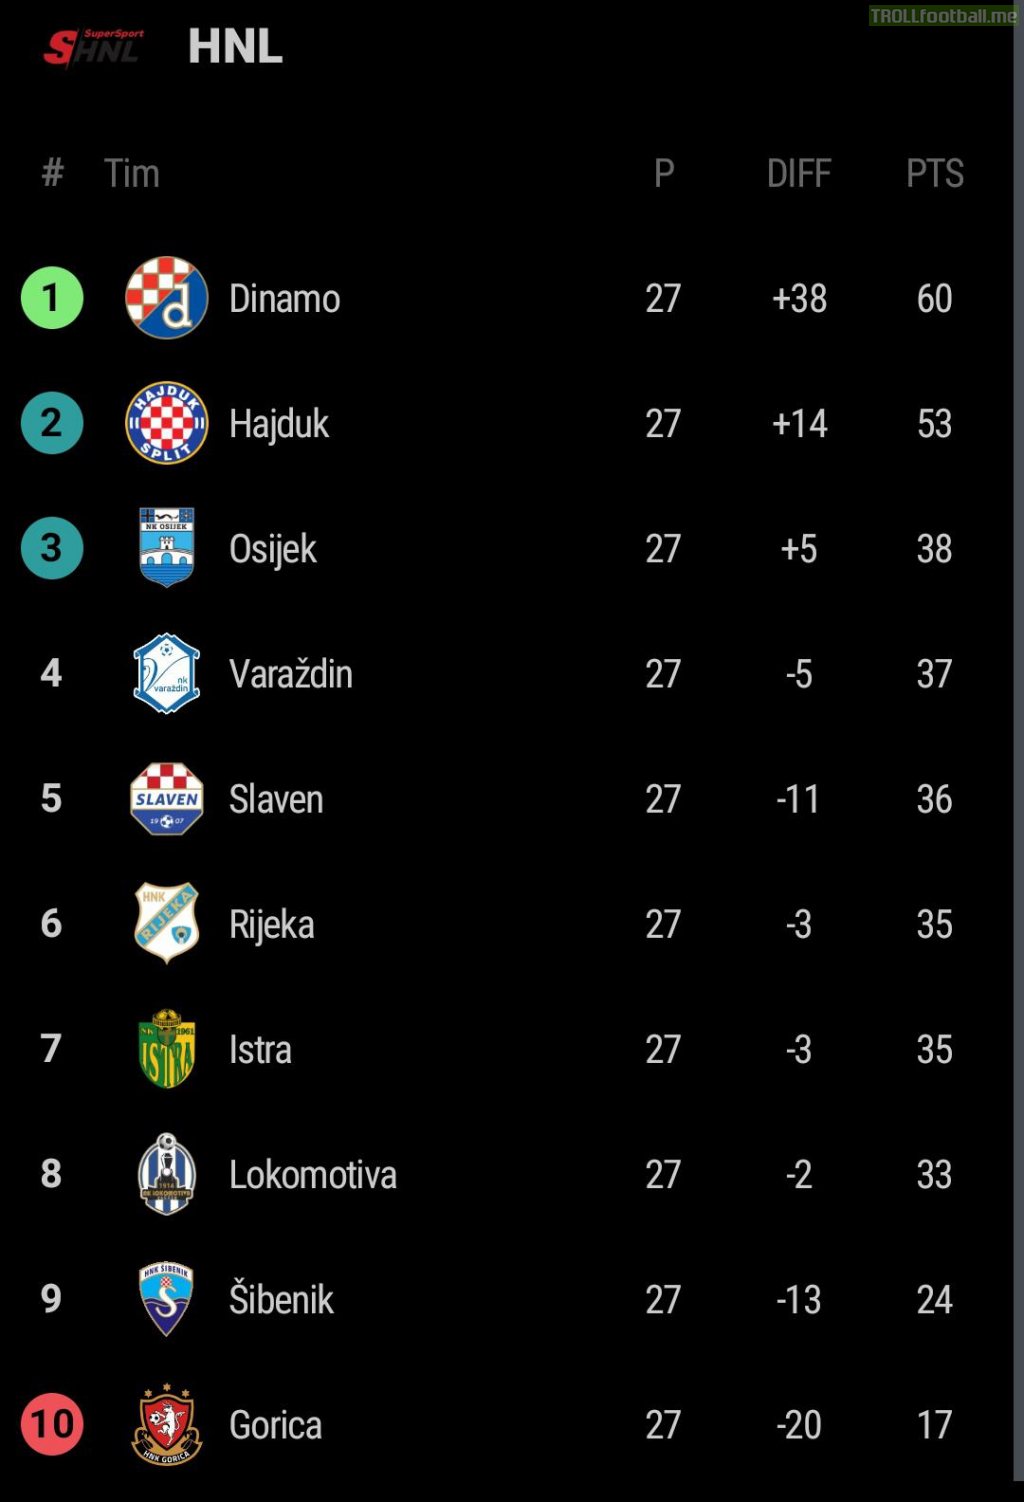 HNL (Croatian Football League) after 27. matchday